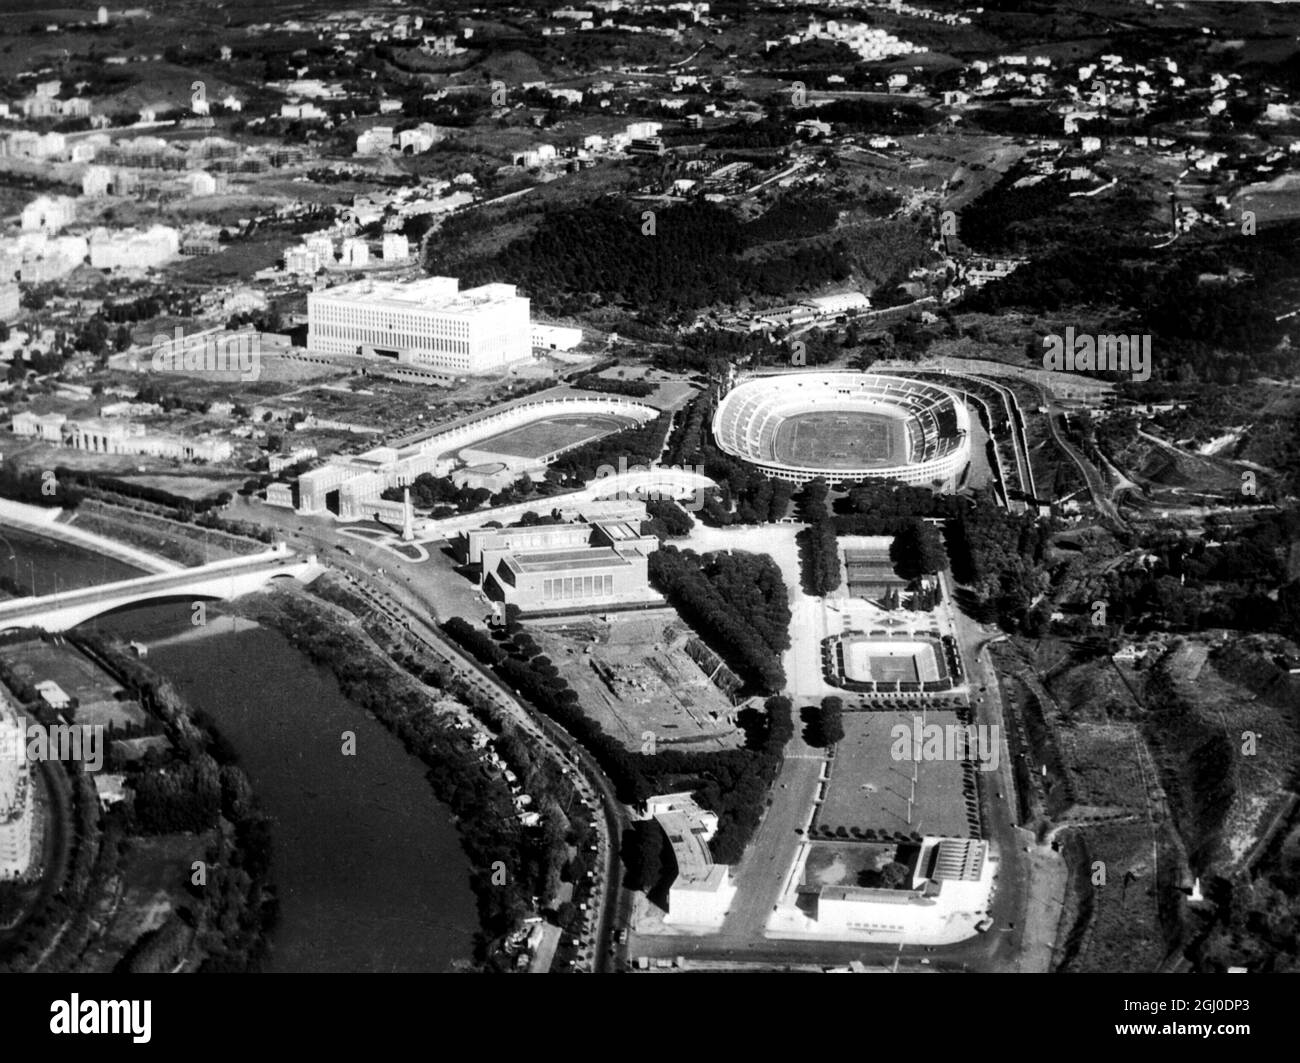 Eine Luftaufnahme des Foro Italico für die Olympischen Spiele 1960 in Rom, die das wichtigste Olympiastadion mit kleineren Stadien und Arenen zeigt. Juni 1959. Stockfoto